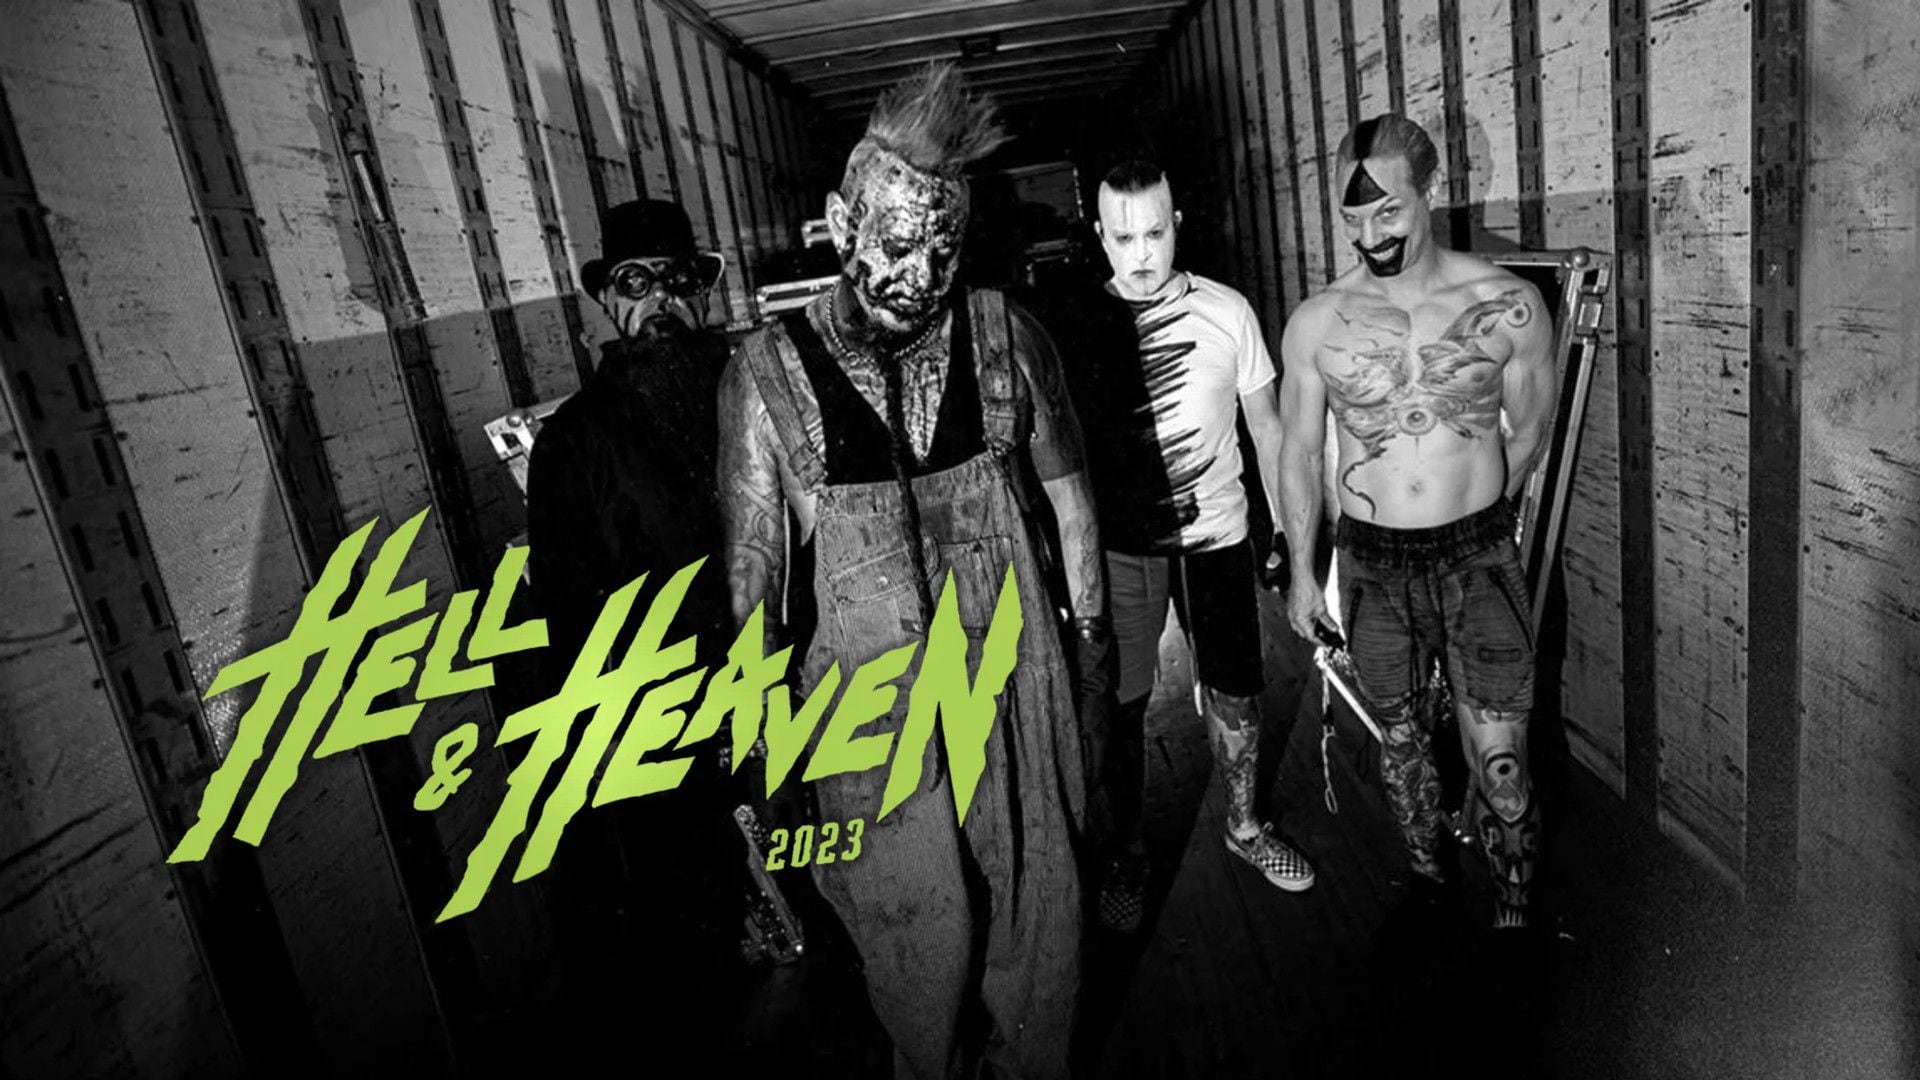 Más de 100 bandas formarán parte de este festivalImágenes: Twitter / Hell and Heaven.